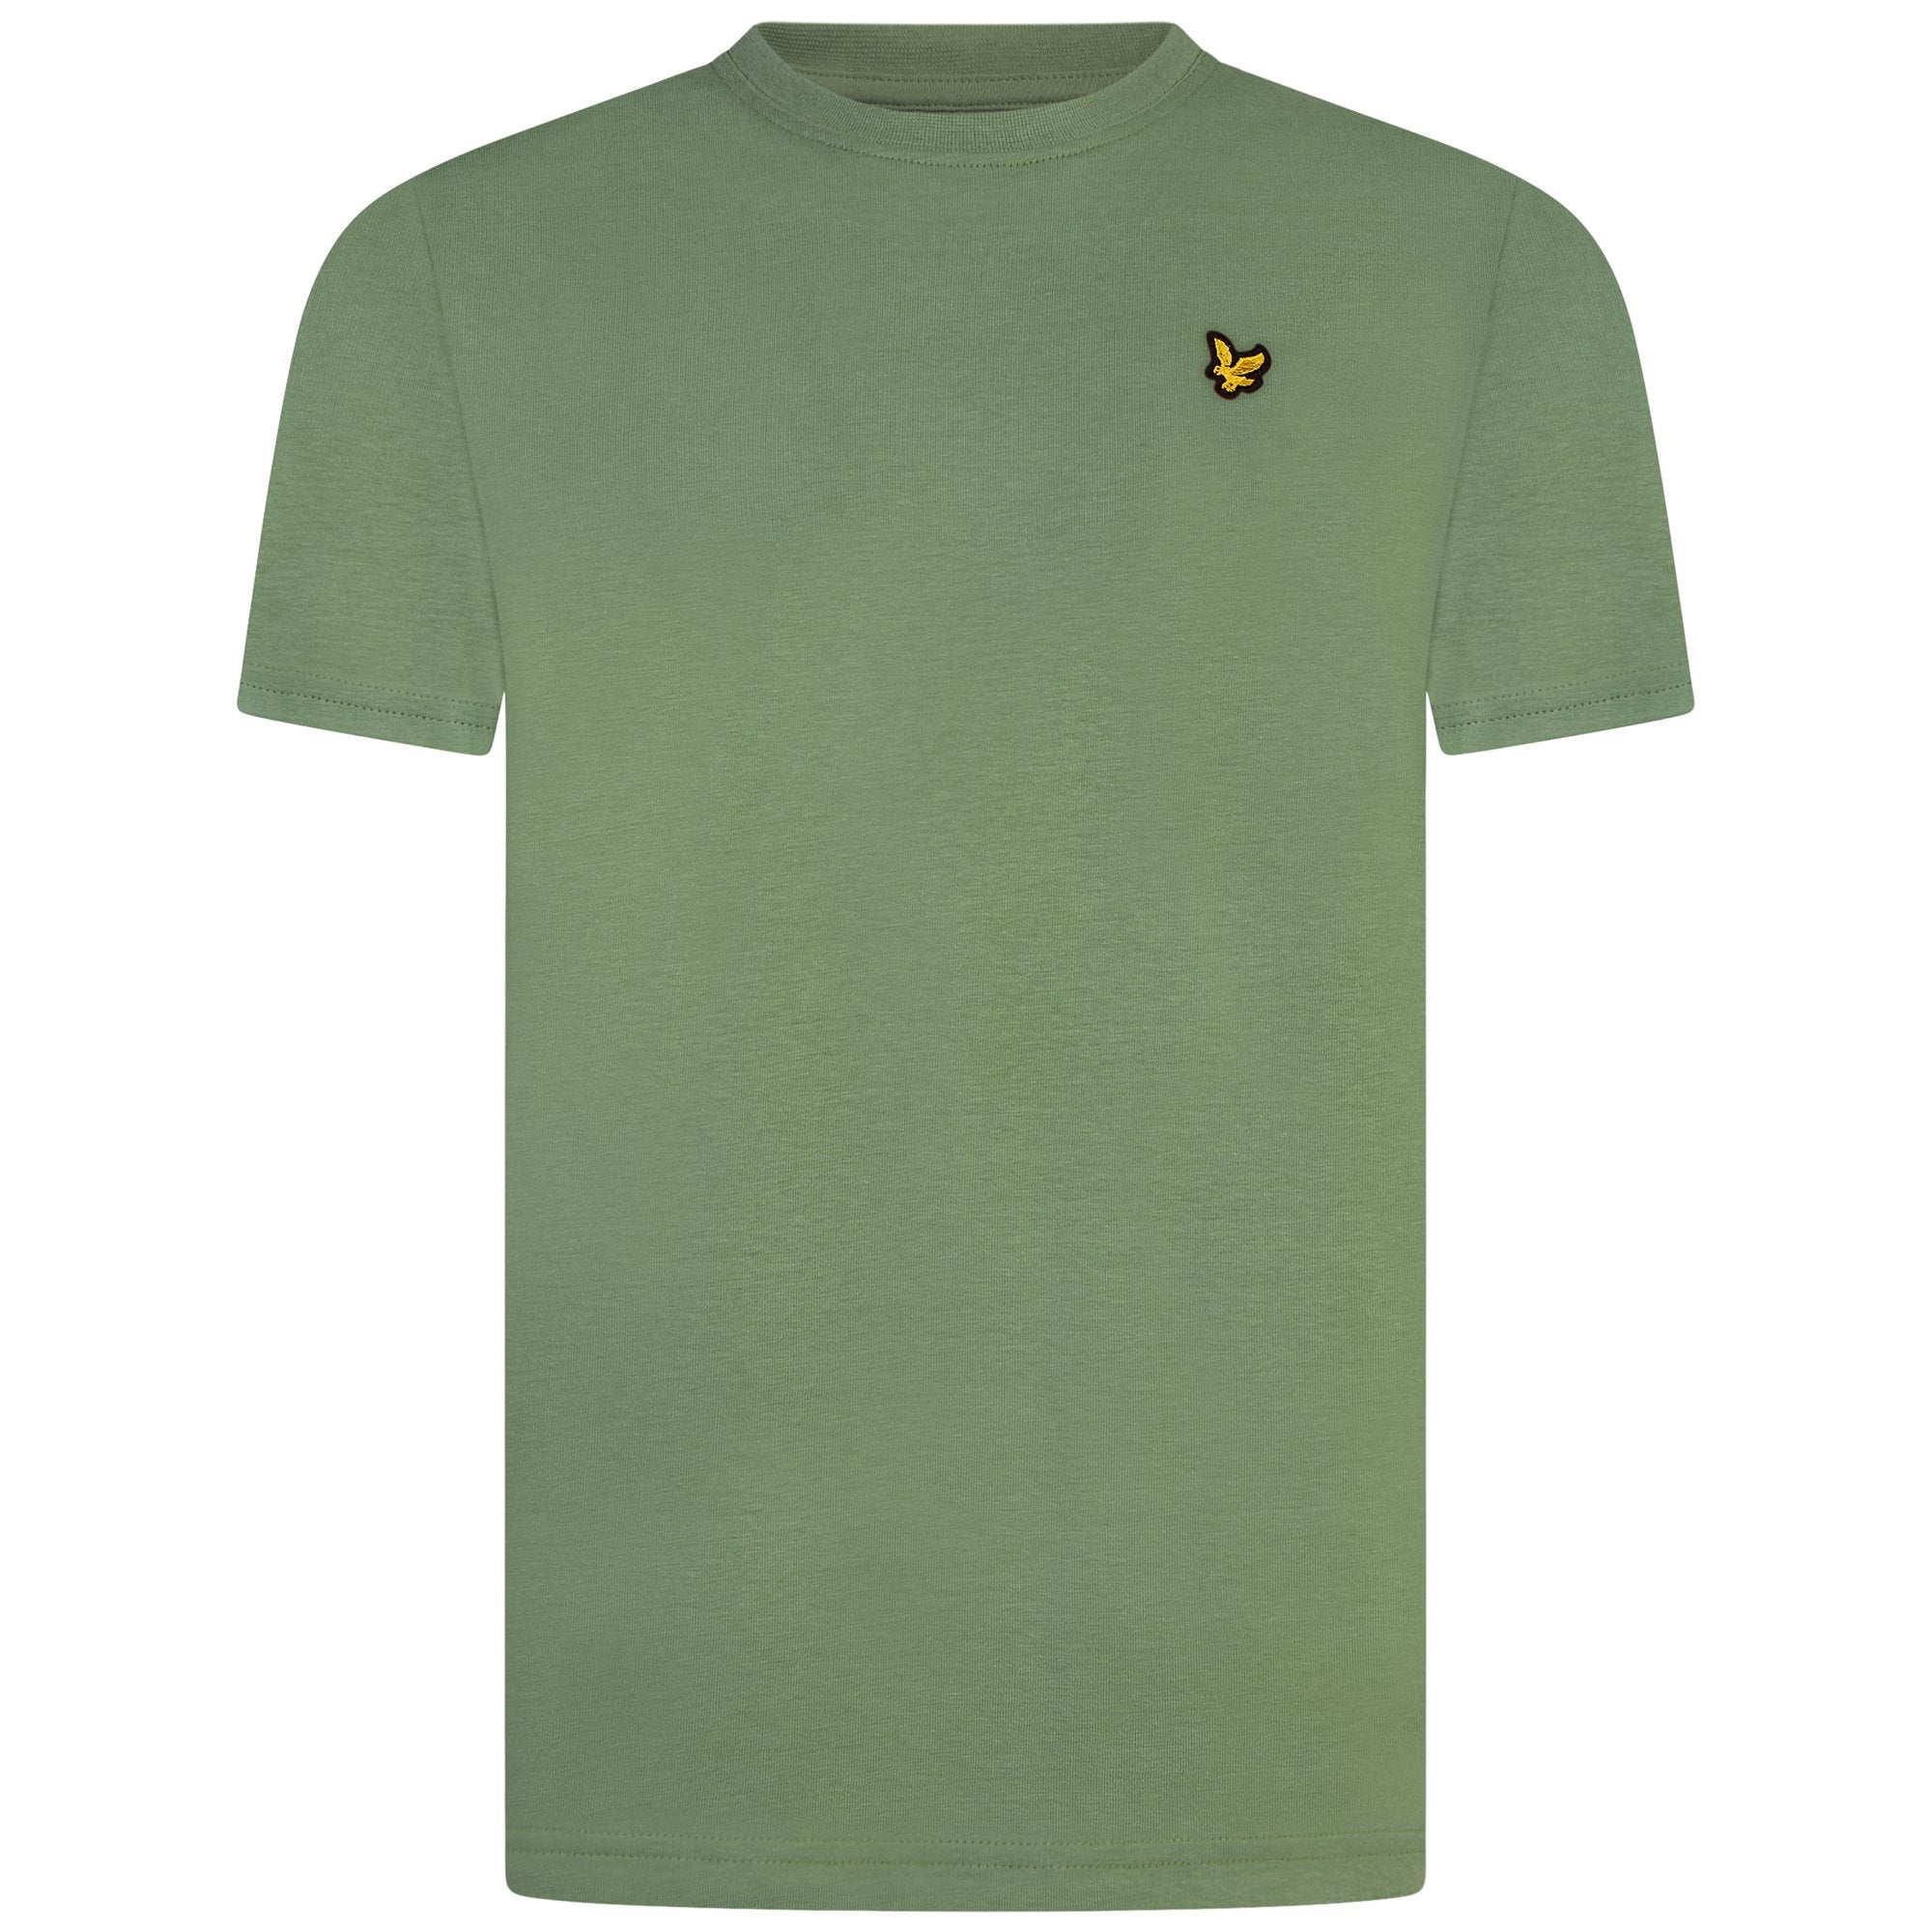 Jongens Classic T-Shirt Hedge Green van Lyle & Scott in de kleur Hedge Green in maat 170-176.